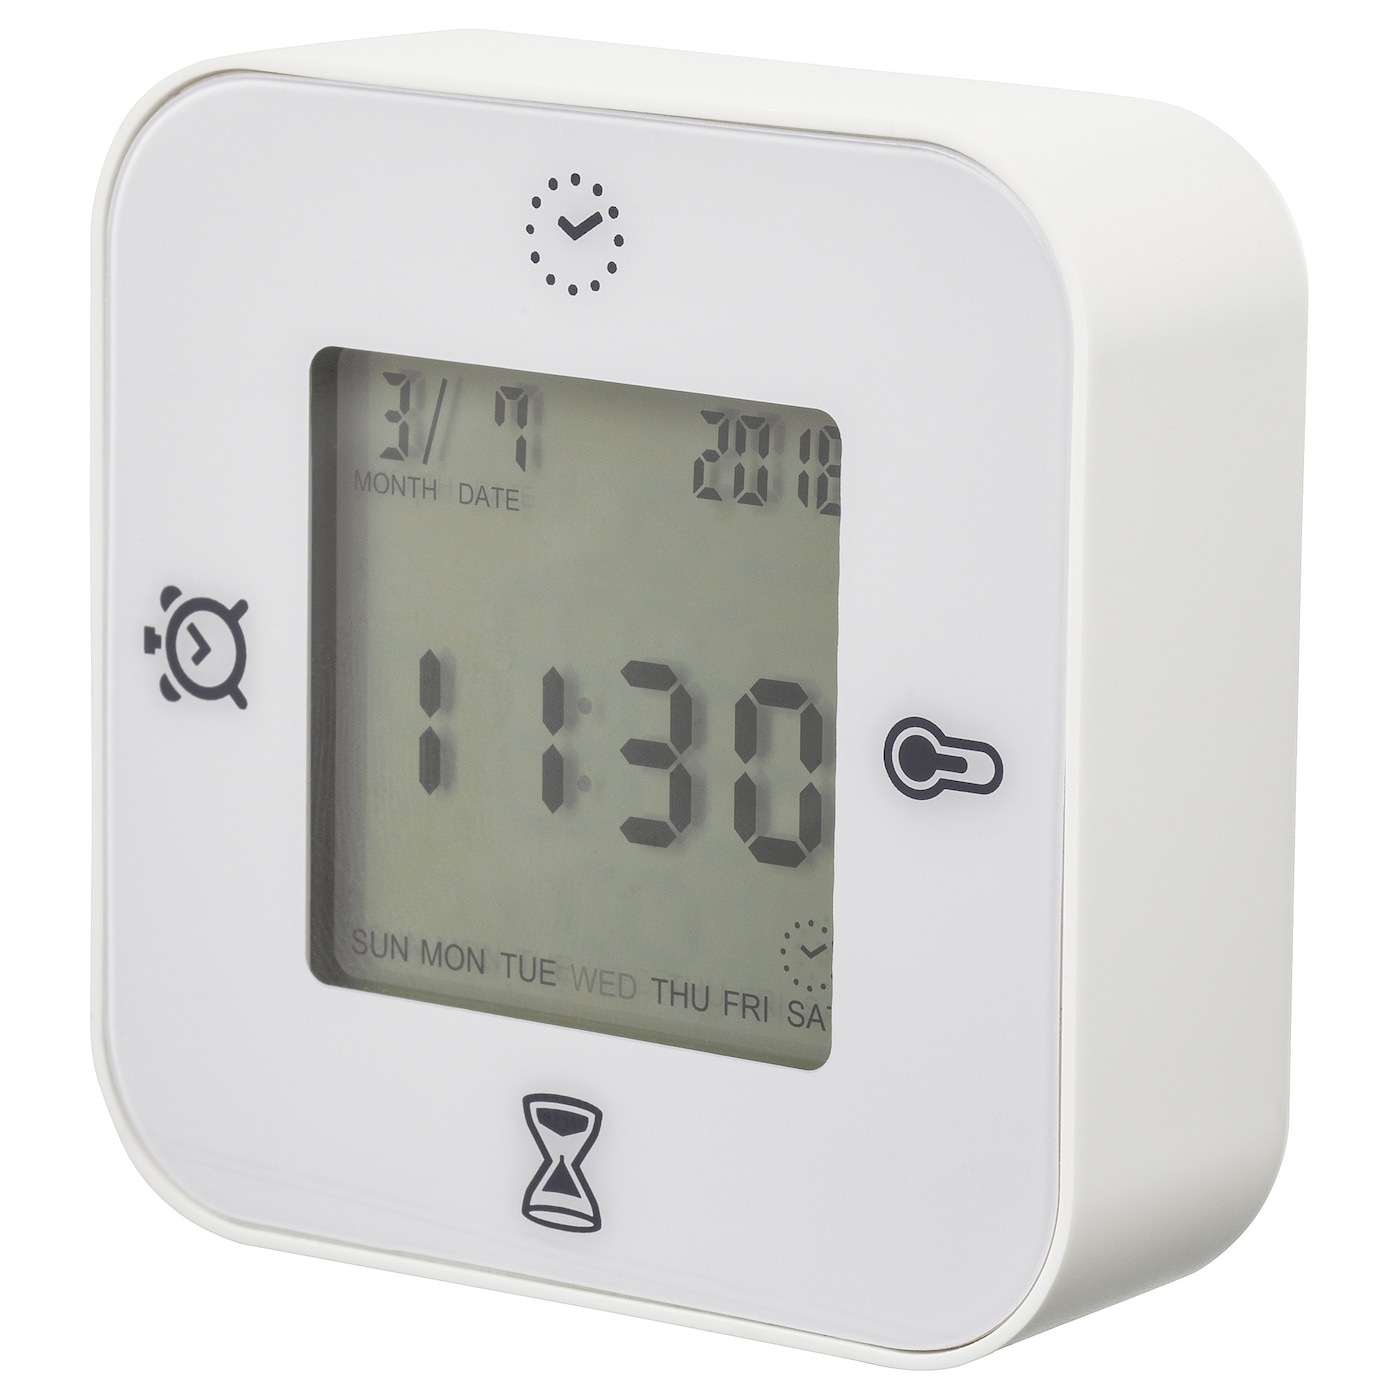 KLOCKIS КЛОККИС Часы/термометр/будильник/таймер, белый IKEA часы термометр будильник таймер lottorp ikea